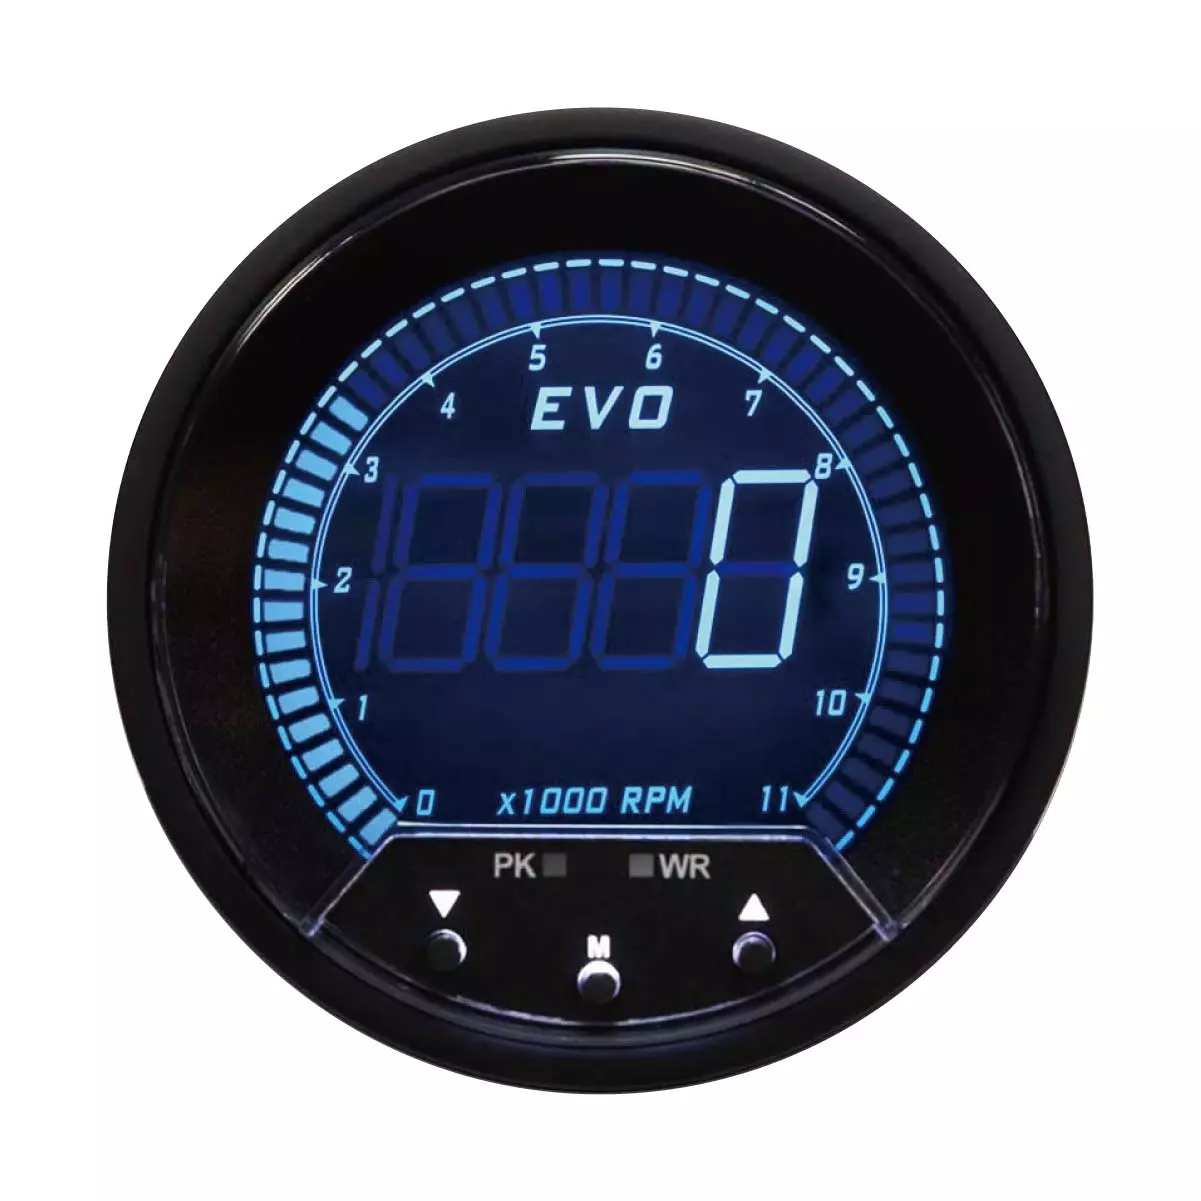 MOTOR METER RACING EVO Series Tachometer Blue Red White Green Backlit Warning Function Peack Recall